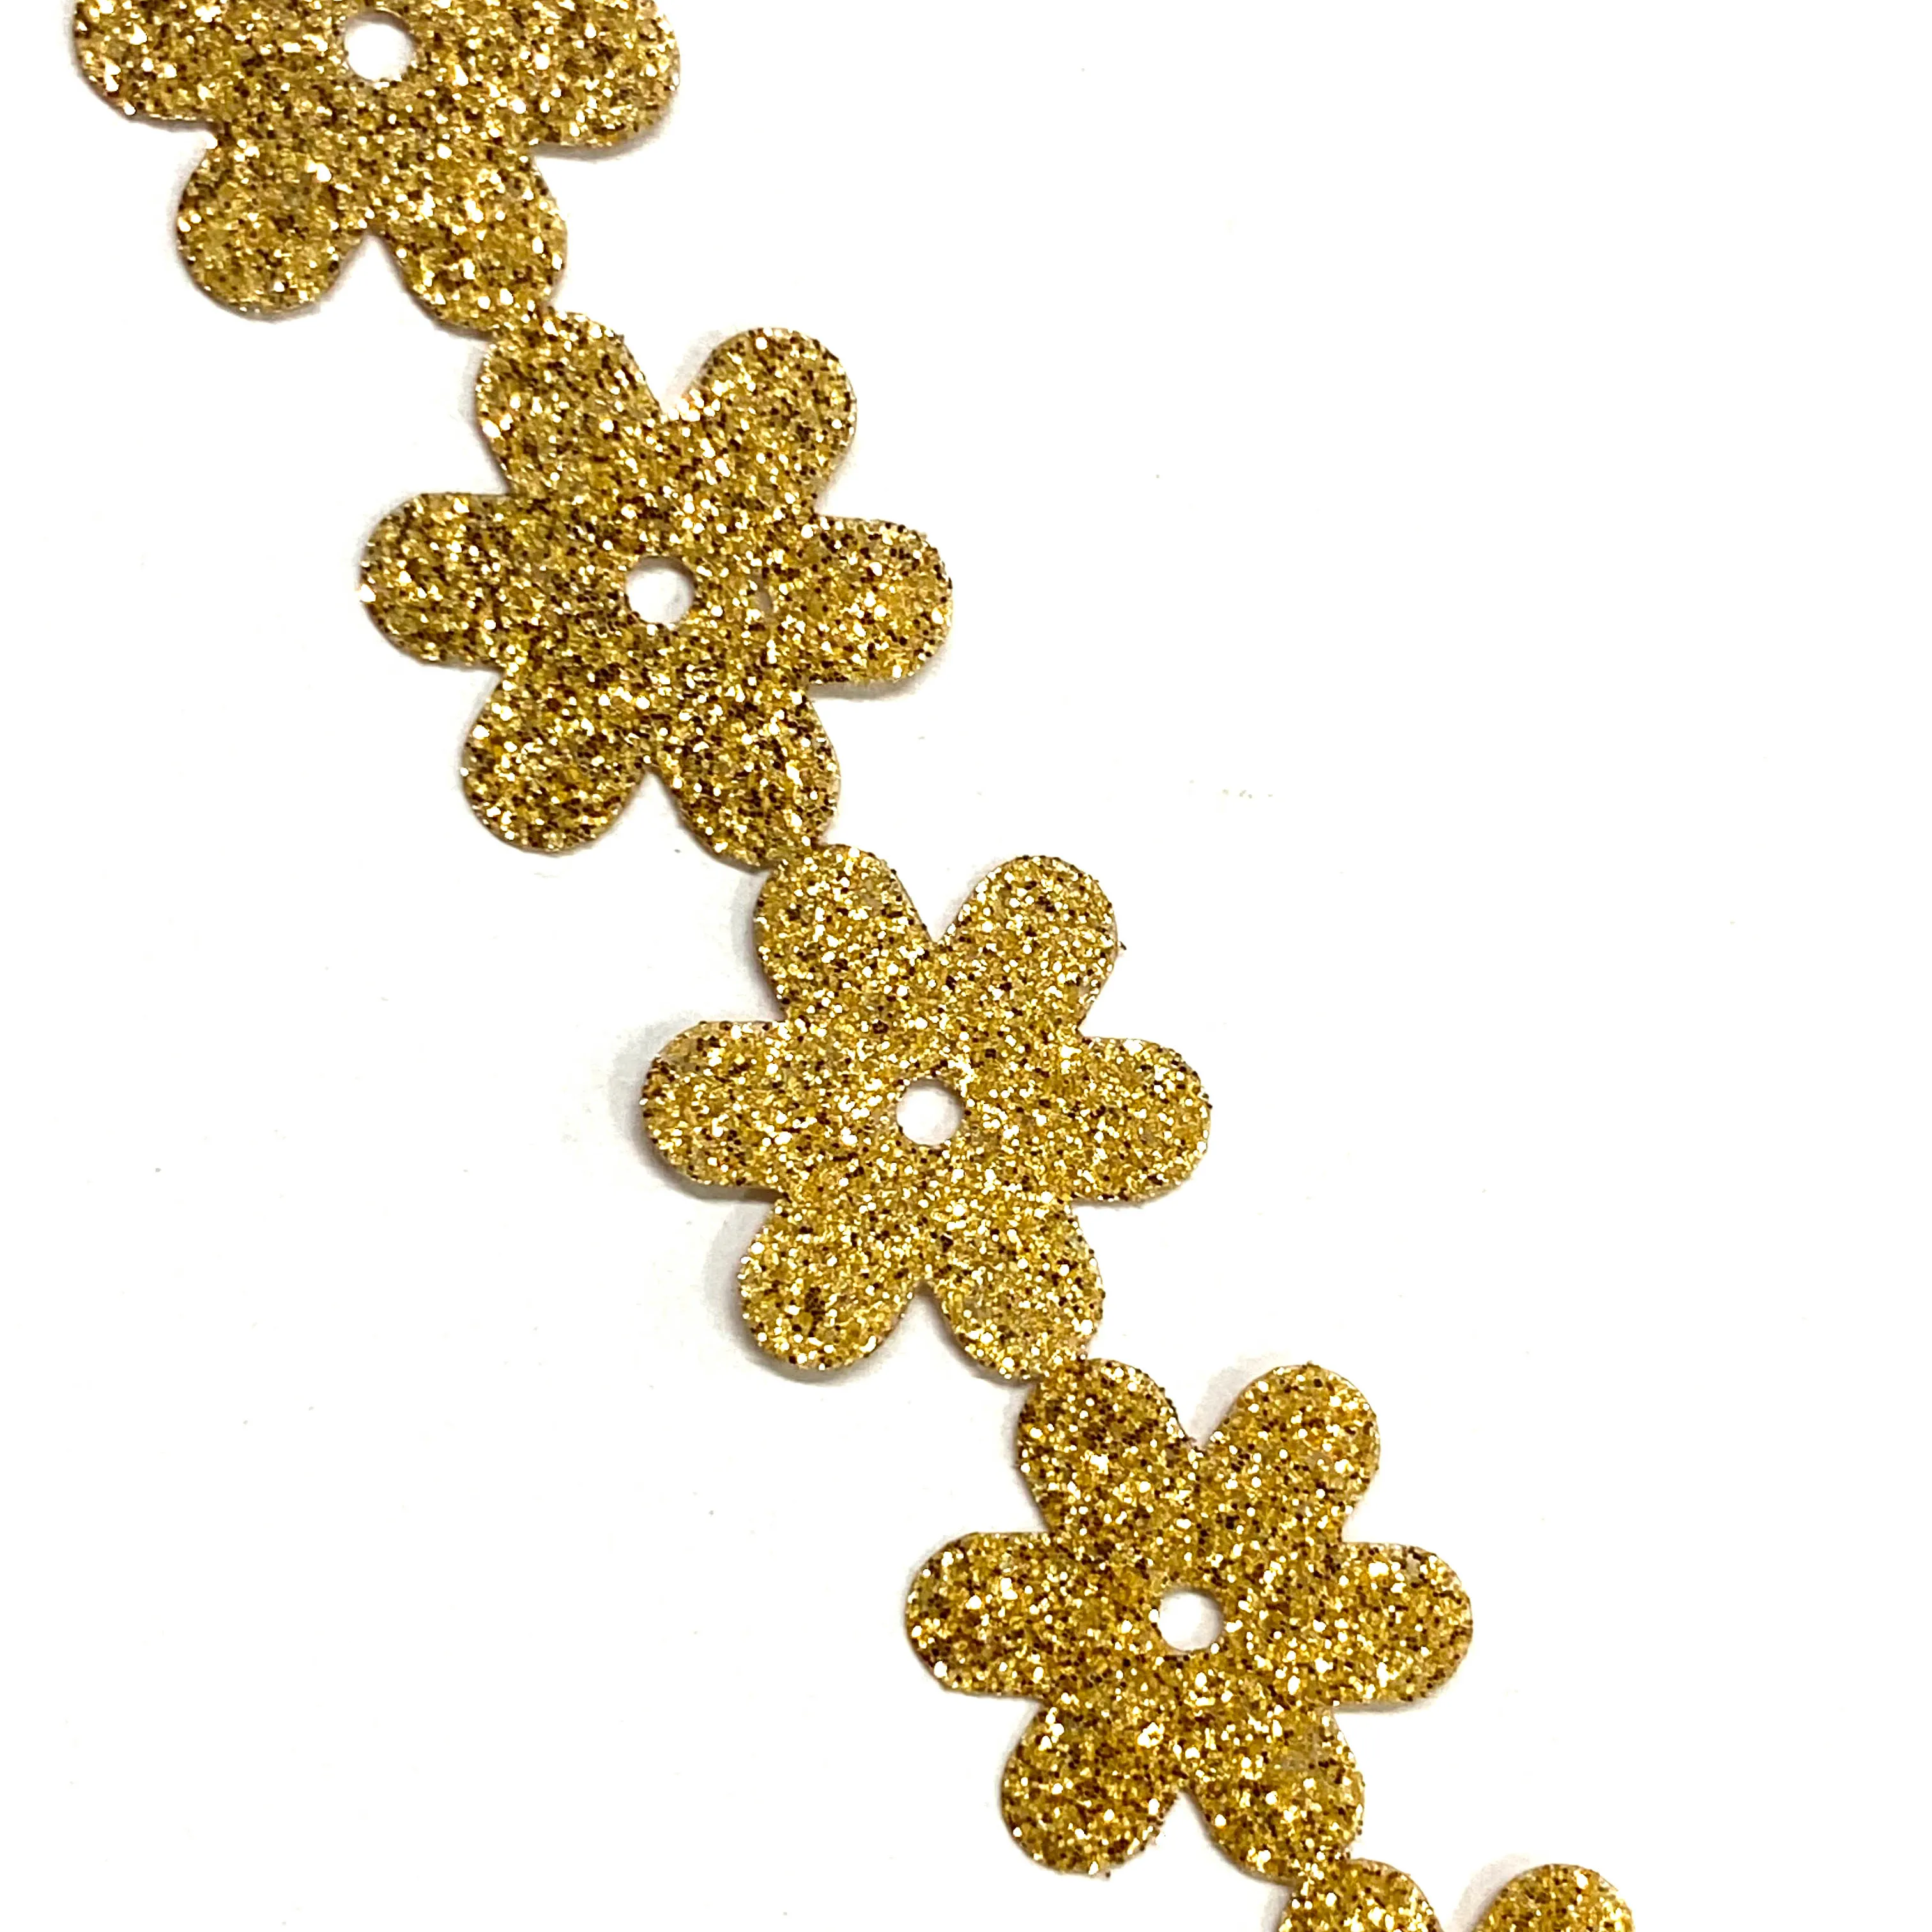 Indiano e pakistano oro paillettes metallizzato Glitter fiore pizzo Trim 10MM per abiti e indumenti offerte all'ingrosso